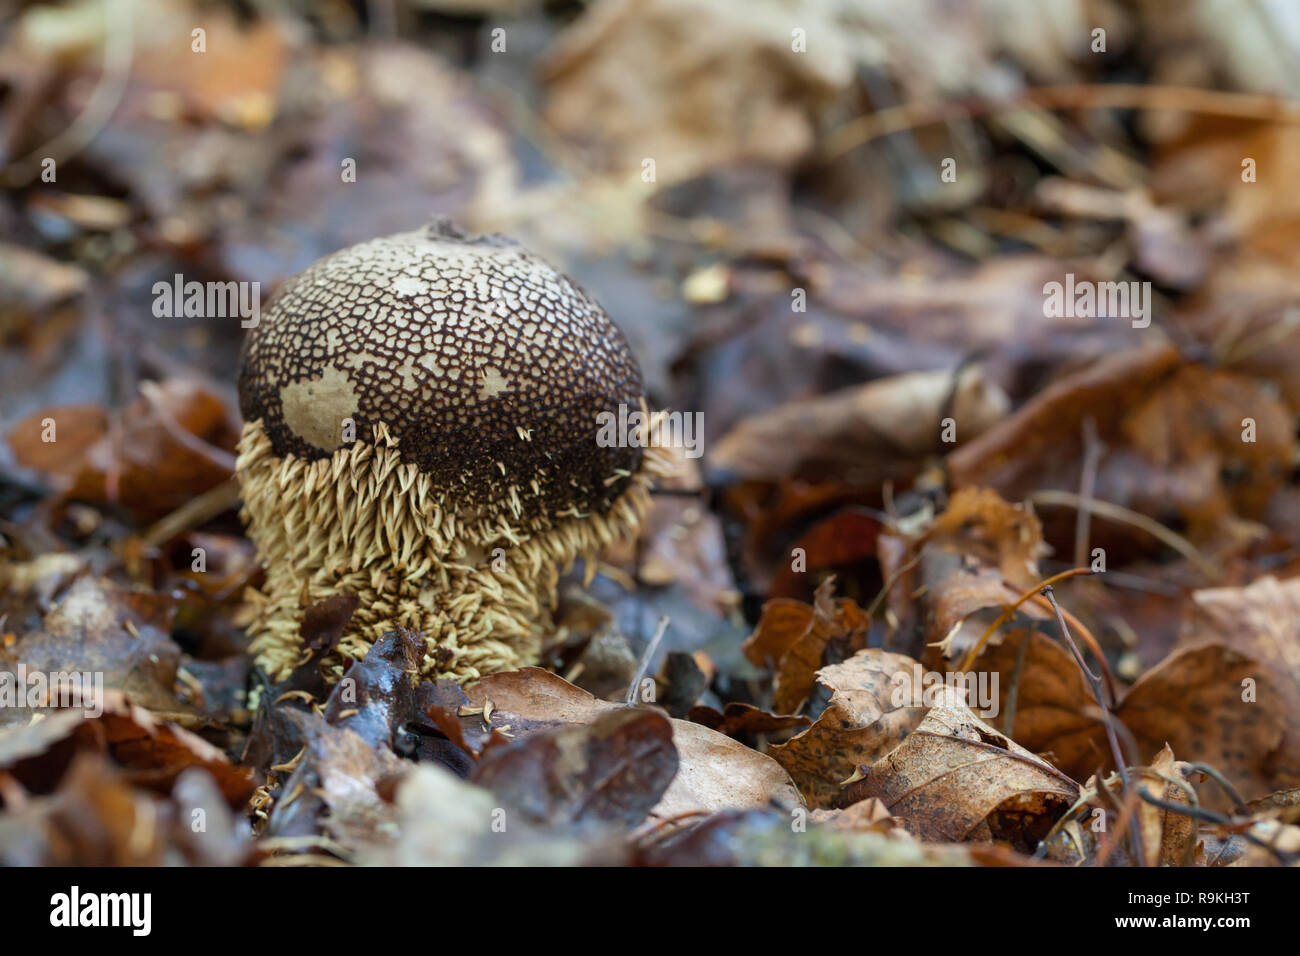 Spiny puffball mushroom Stock Photo